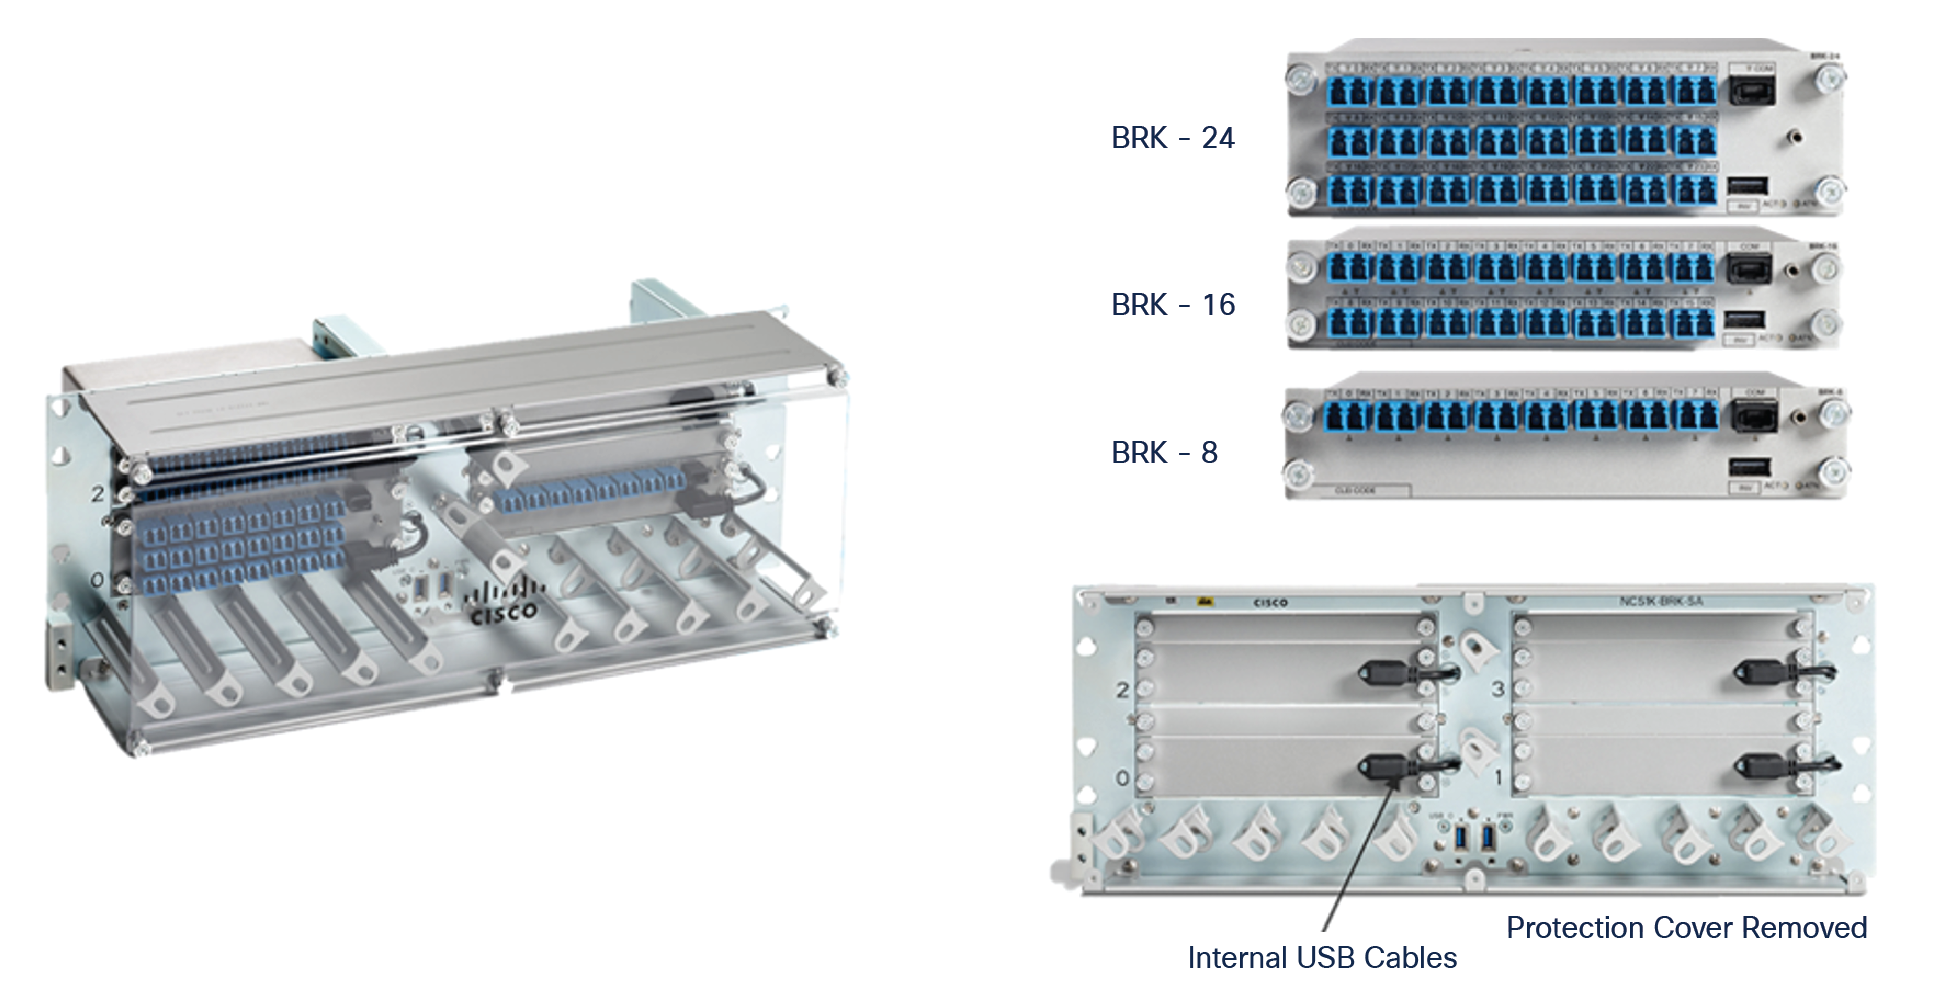 NCS 1010 BRK-SA and modules